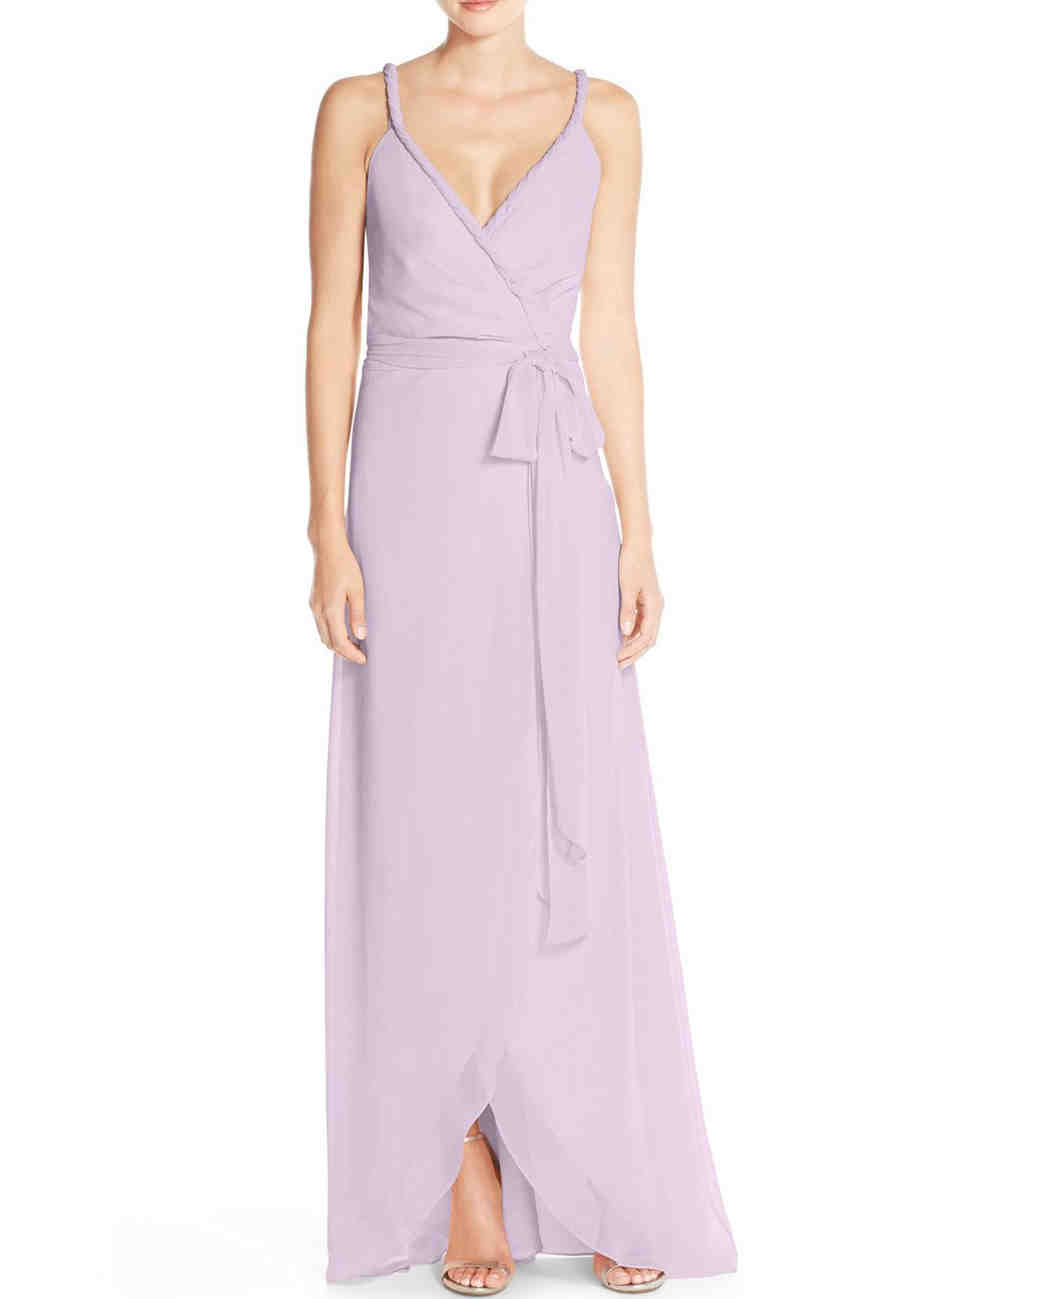 Purple Bridesmaid Dresses | Martha Stewart Weddings